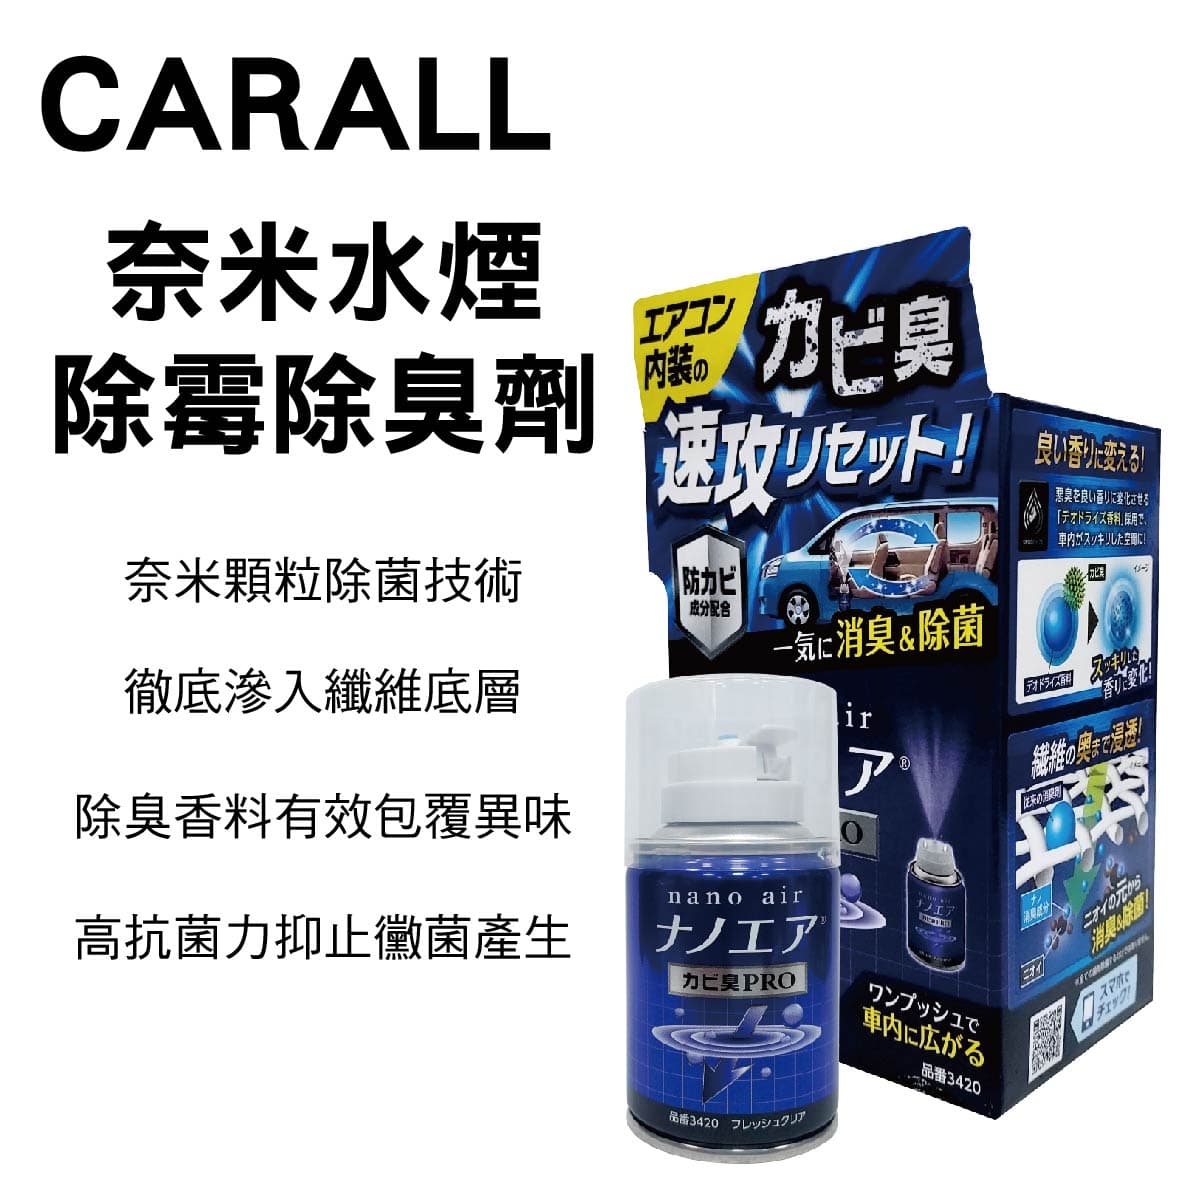 真便宜 CARALL J3420 奈米水煙除霉消臭劑40ml